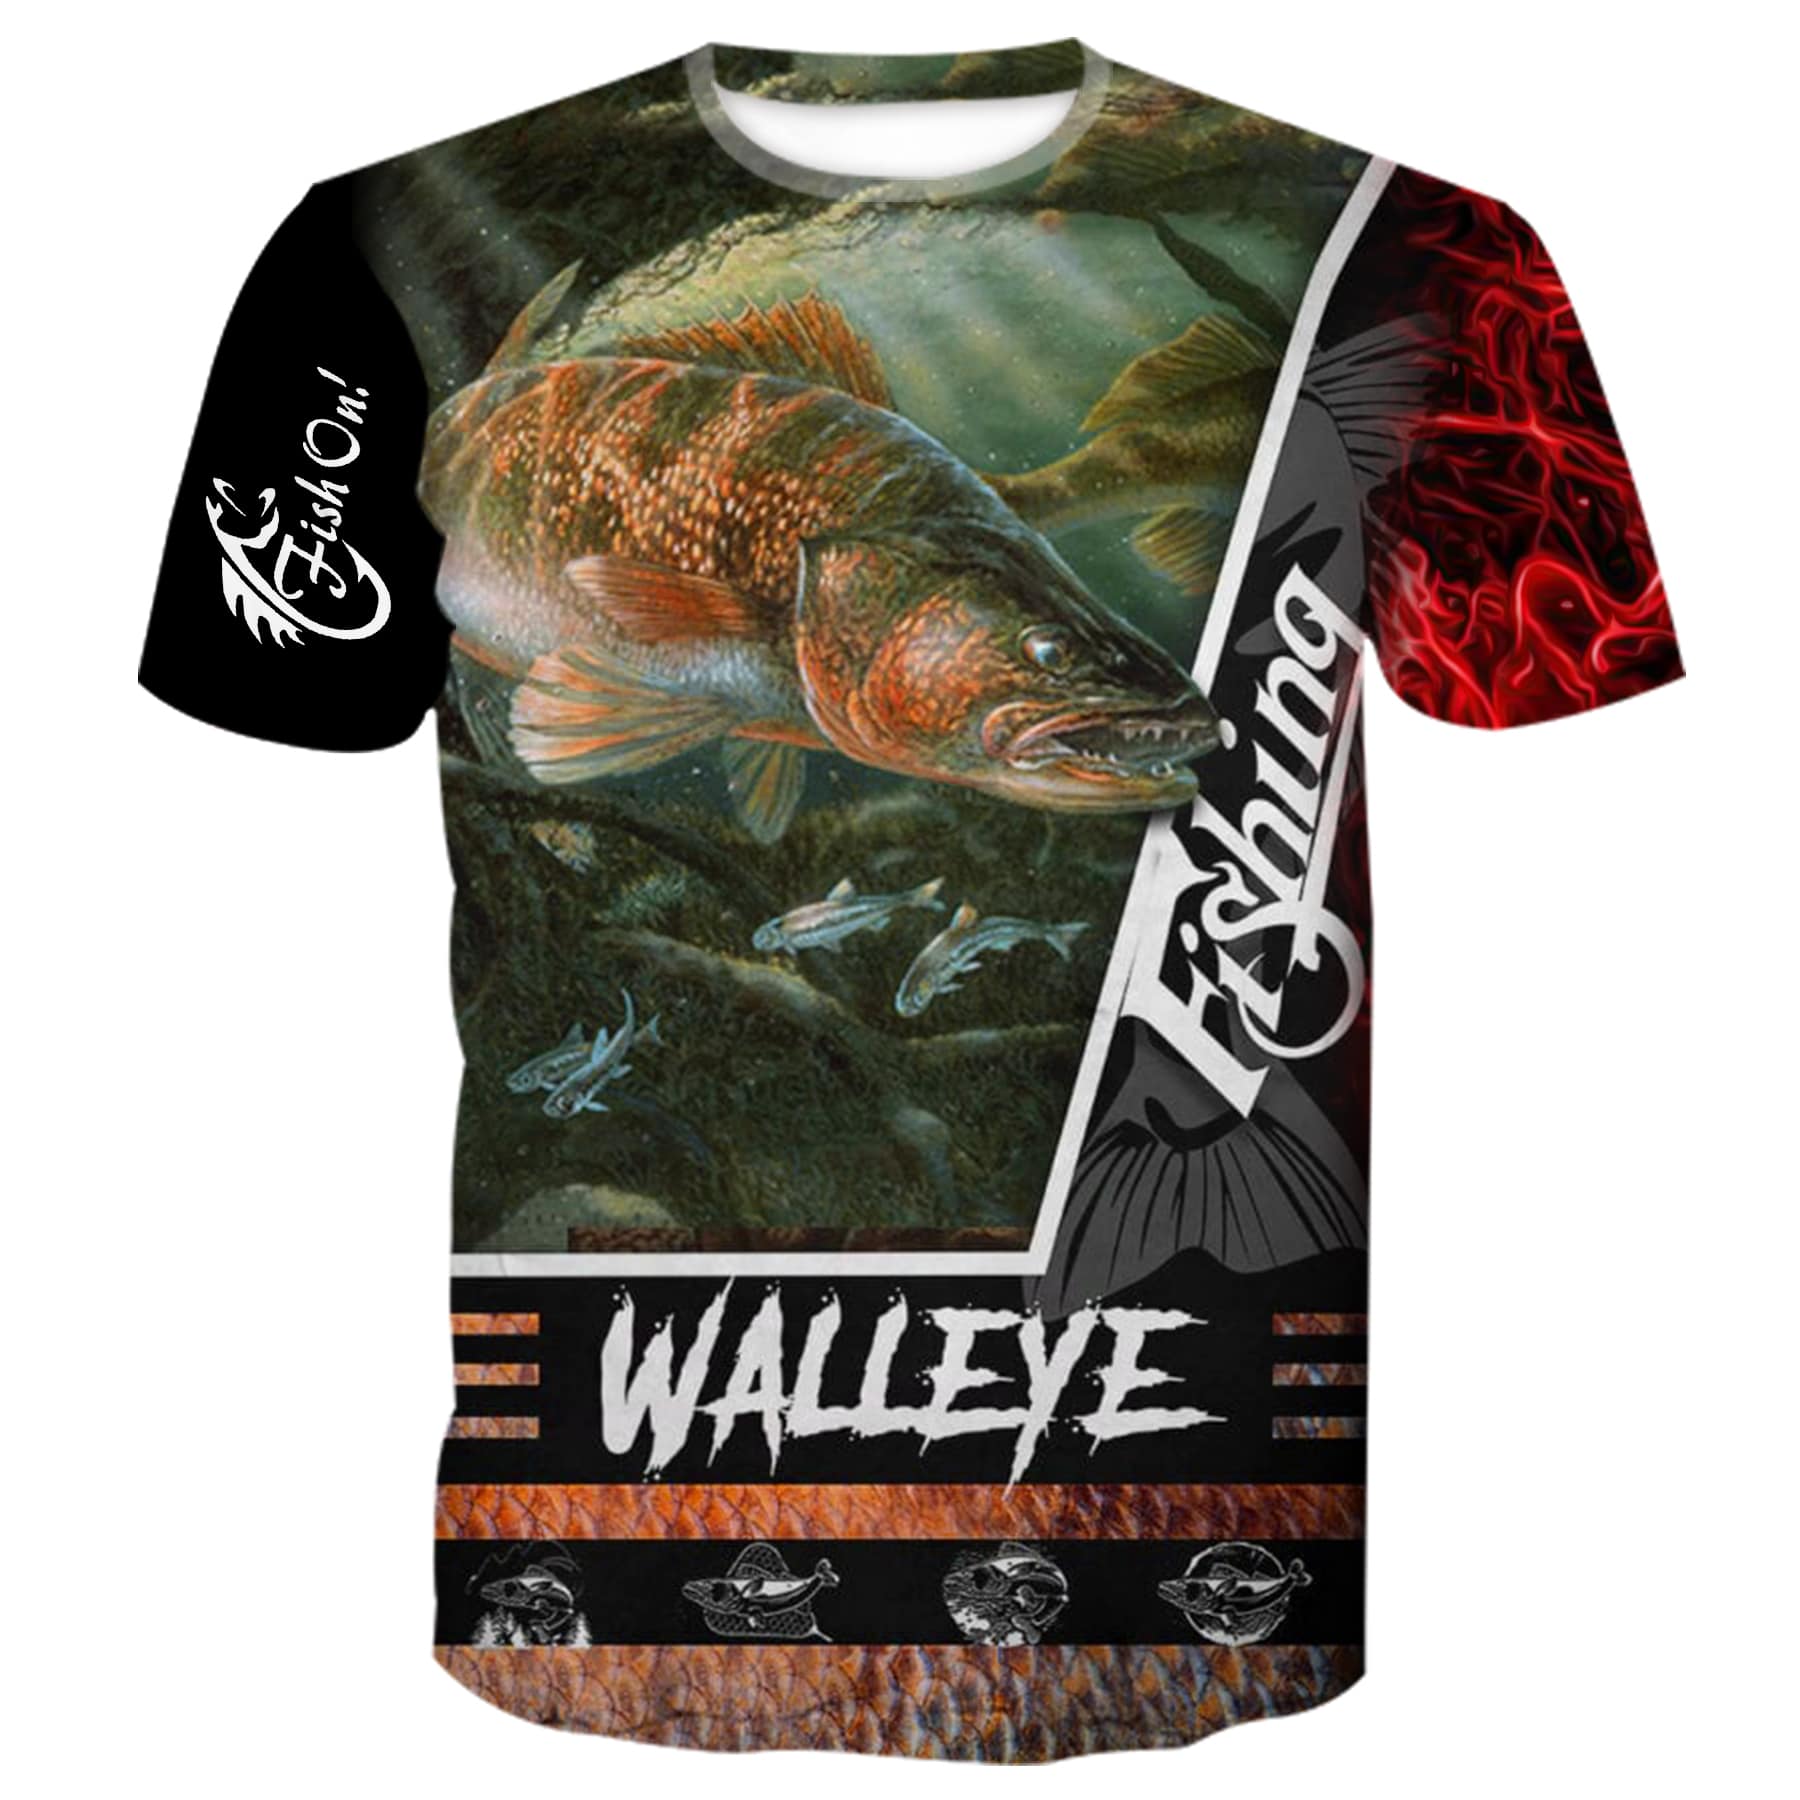 Walleye Fishing - T-Shirt, L / T-Shirt